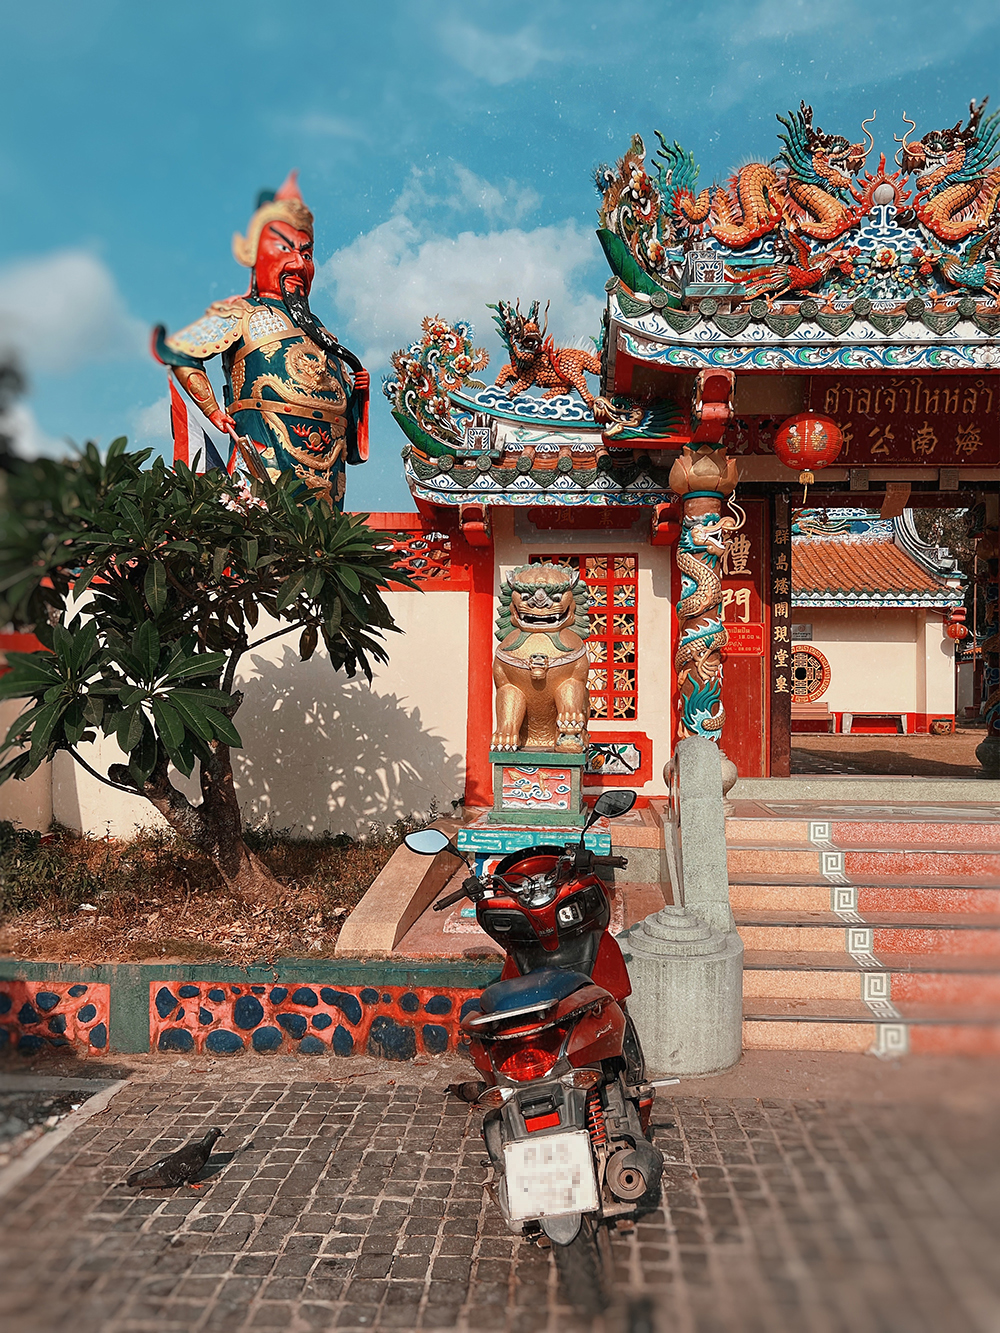 Китайский храм Hainan Shrine — небольшой, пышно украшенный набор строений со множеством маленьких фигурок святых внутри и большой фигурой генерала Гуань Юя снаружи